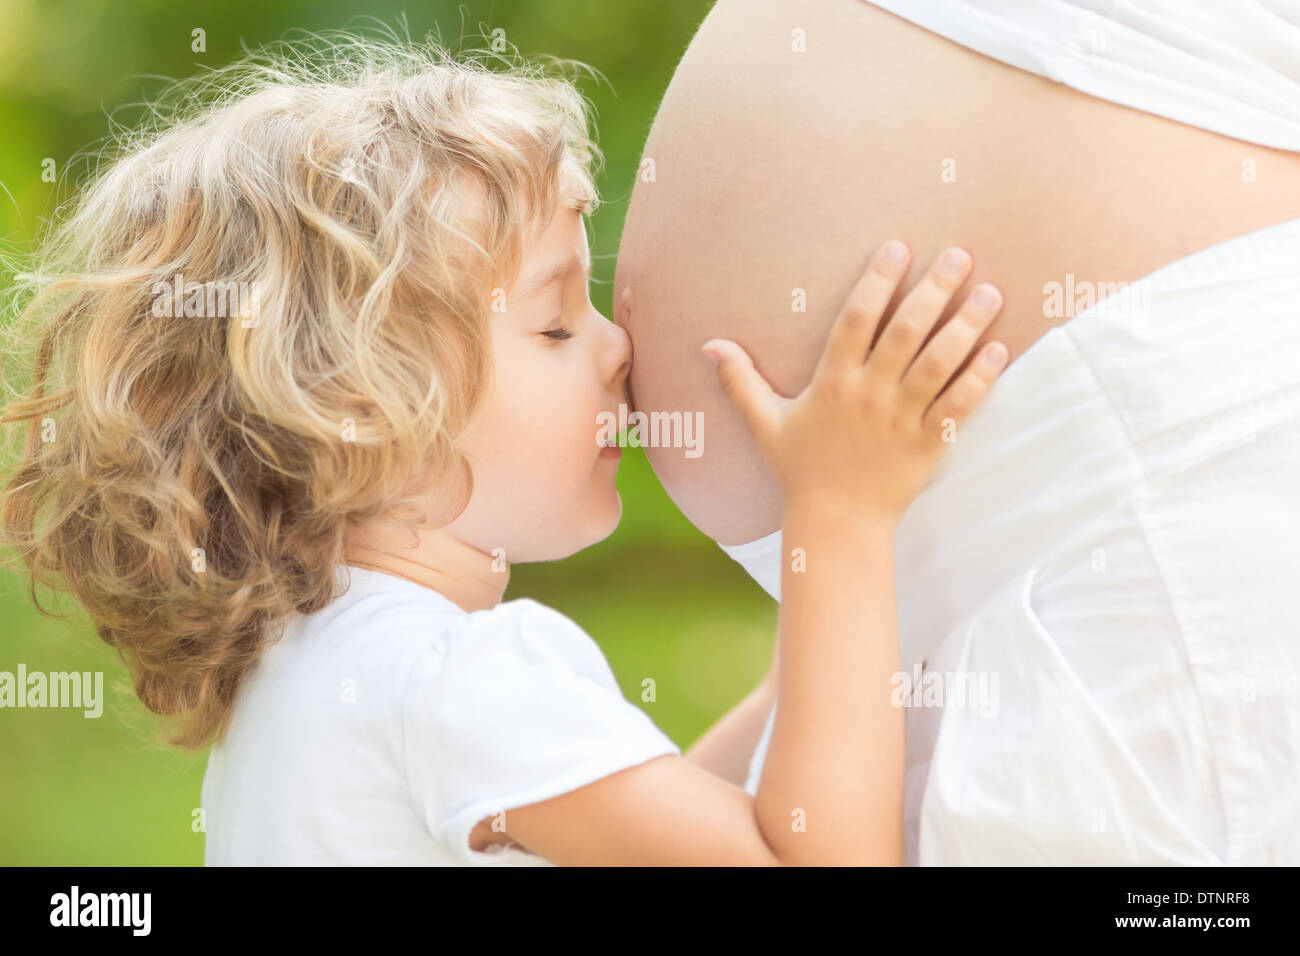 Niño besar el vientre de la mujer embarazada Foto de stock